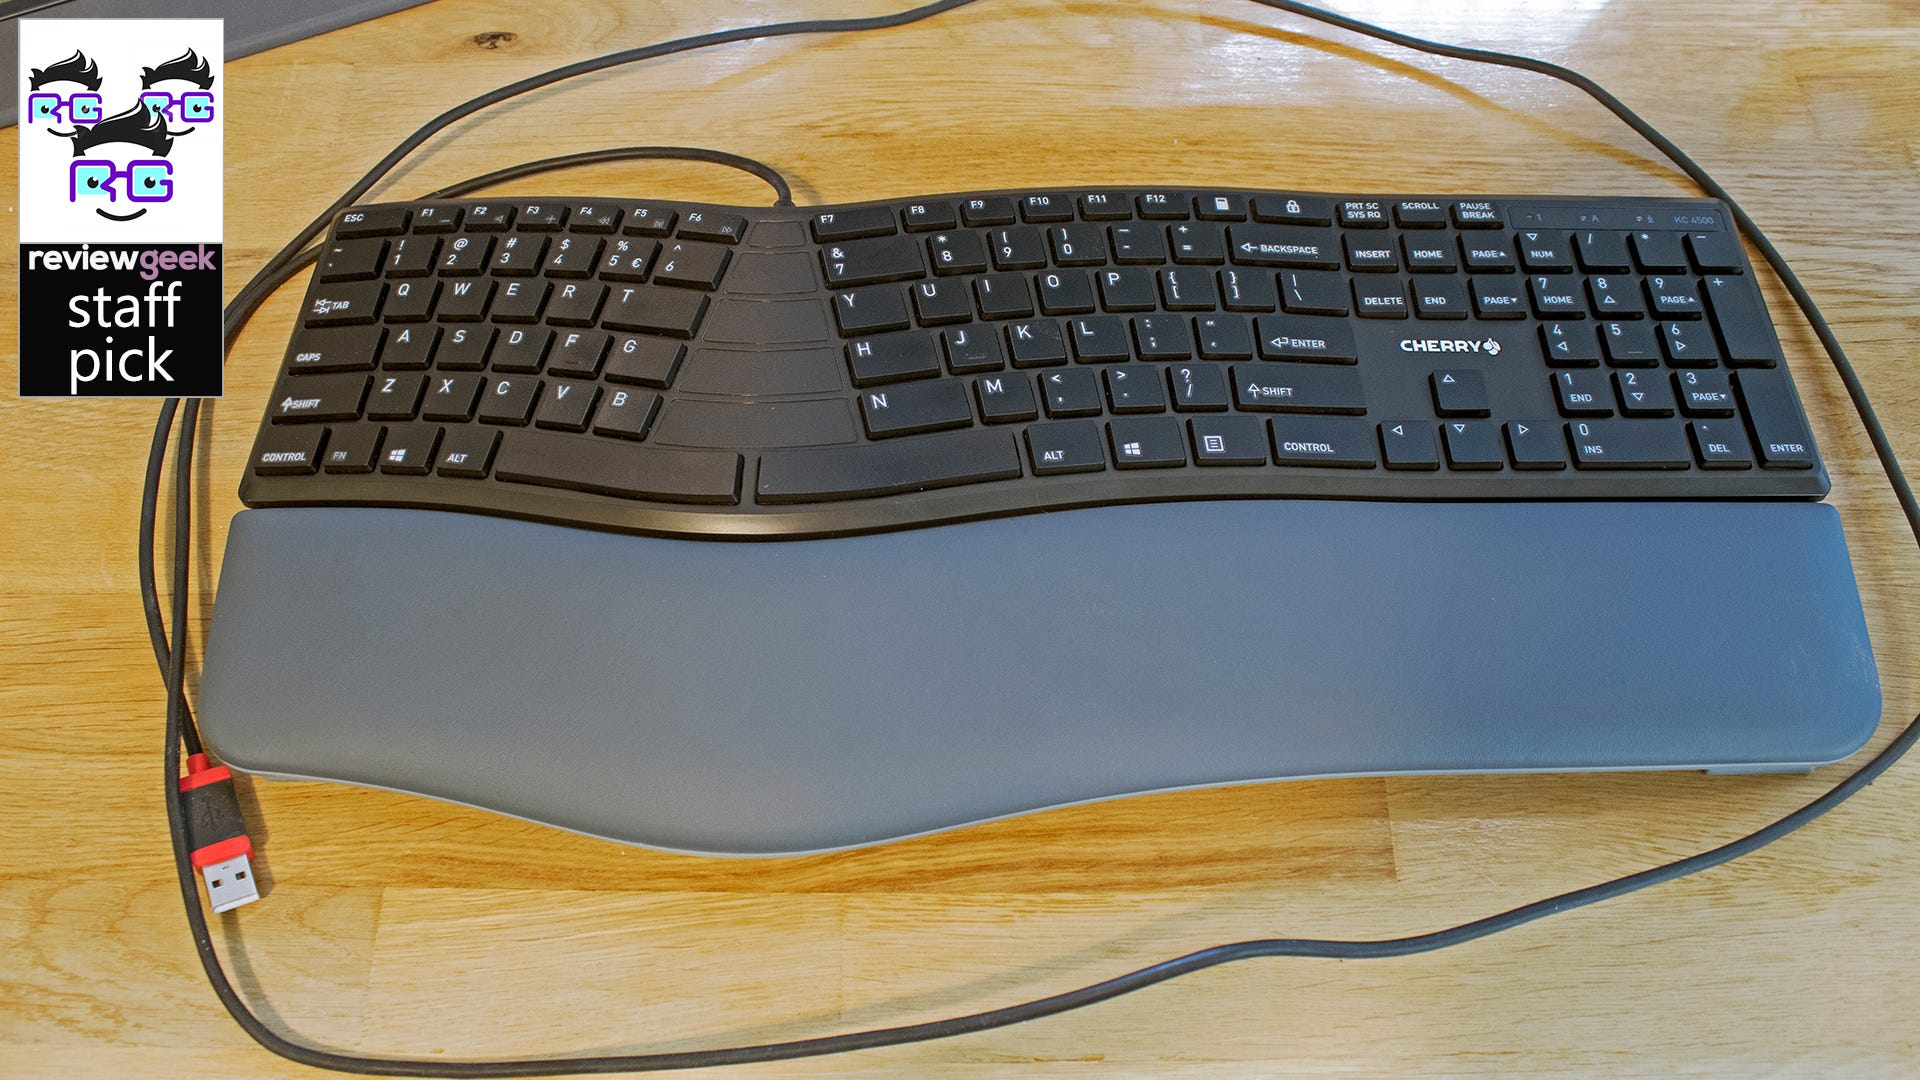 CHERRY KC 4500 ERGO recension: Utmärkt ergonomiskt tangentbord för nybörjare